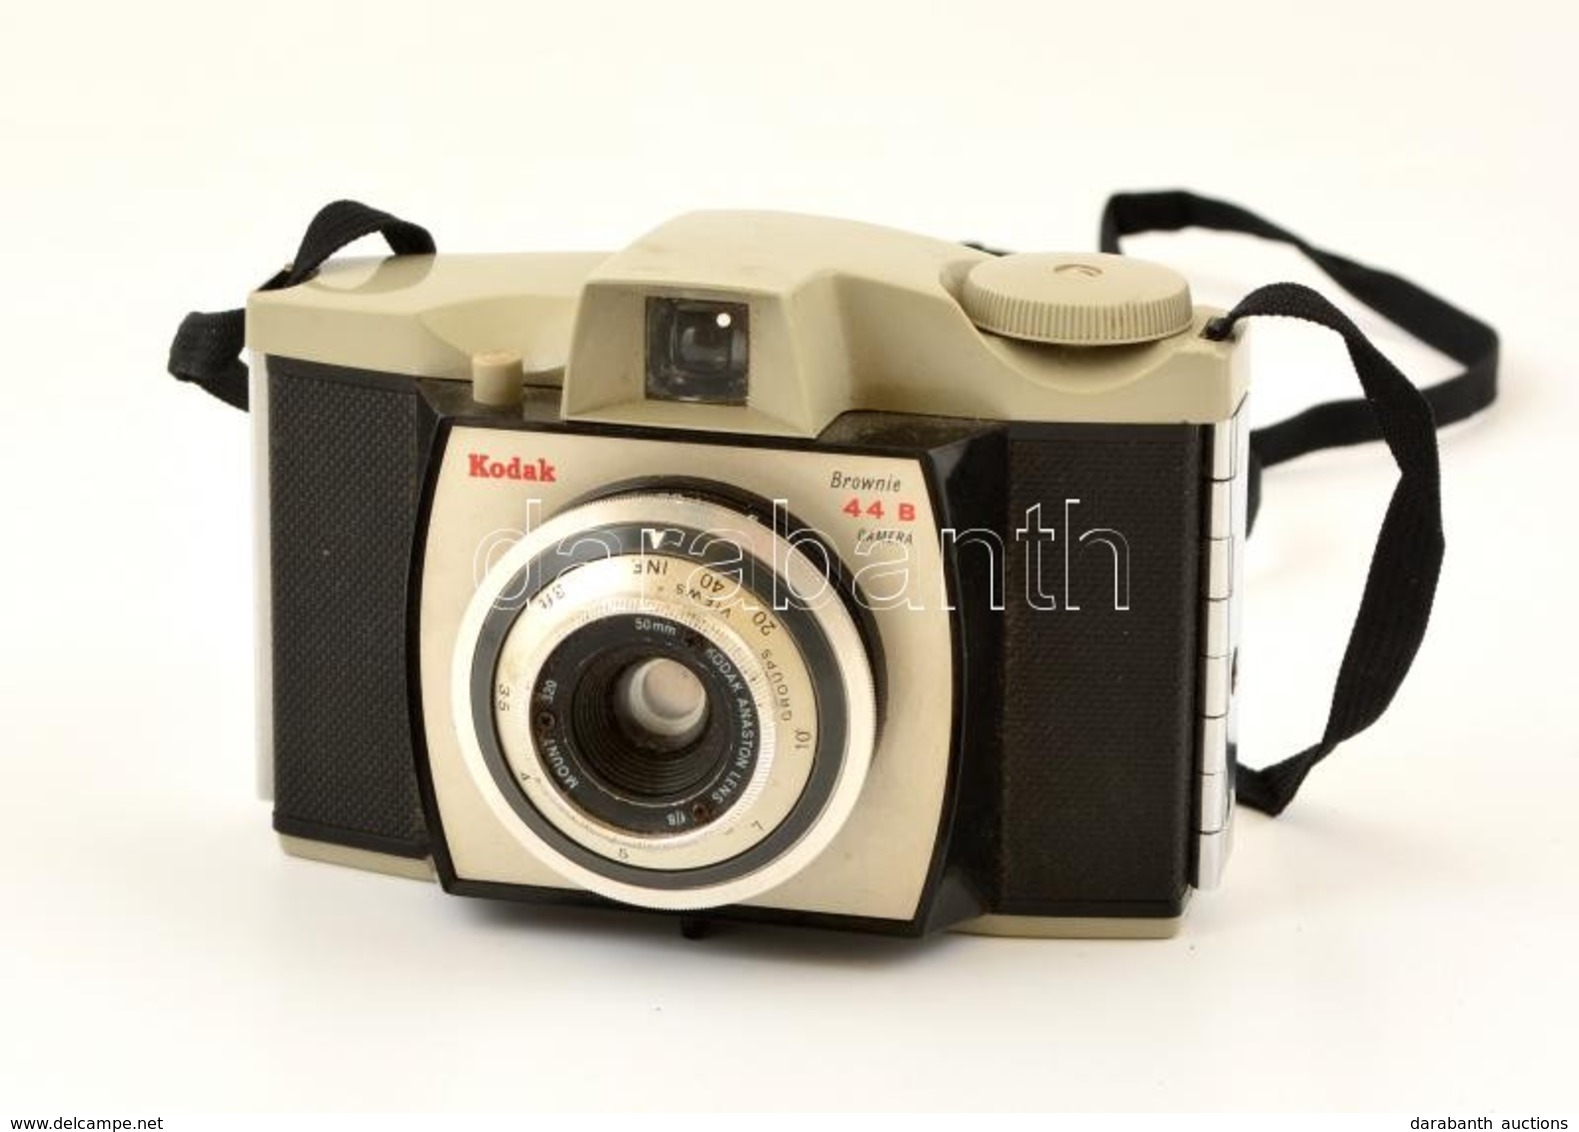 Kodak Eastman Brownie 44B Fényképezőgép, Működőképes, Jó állapotban / Vintage Kodak Film Camera, In Good Condition - Fotoapparate